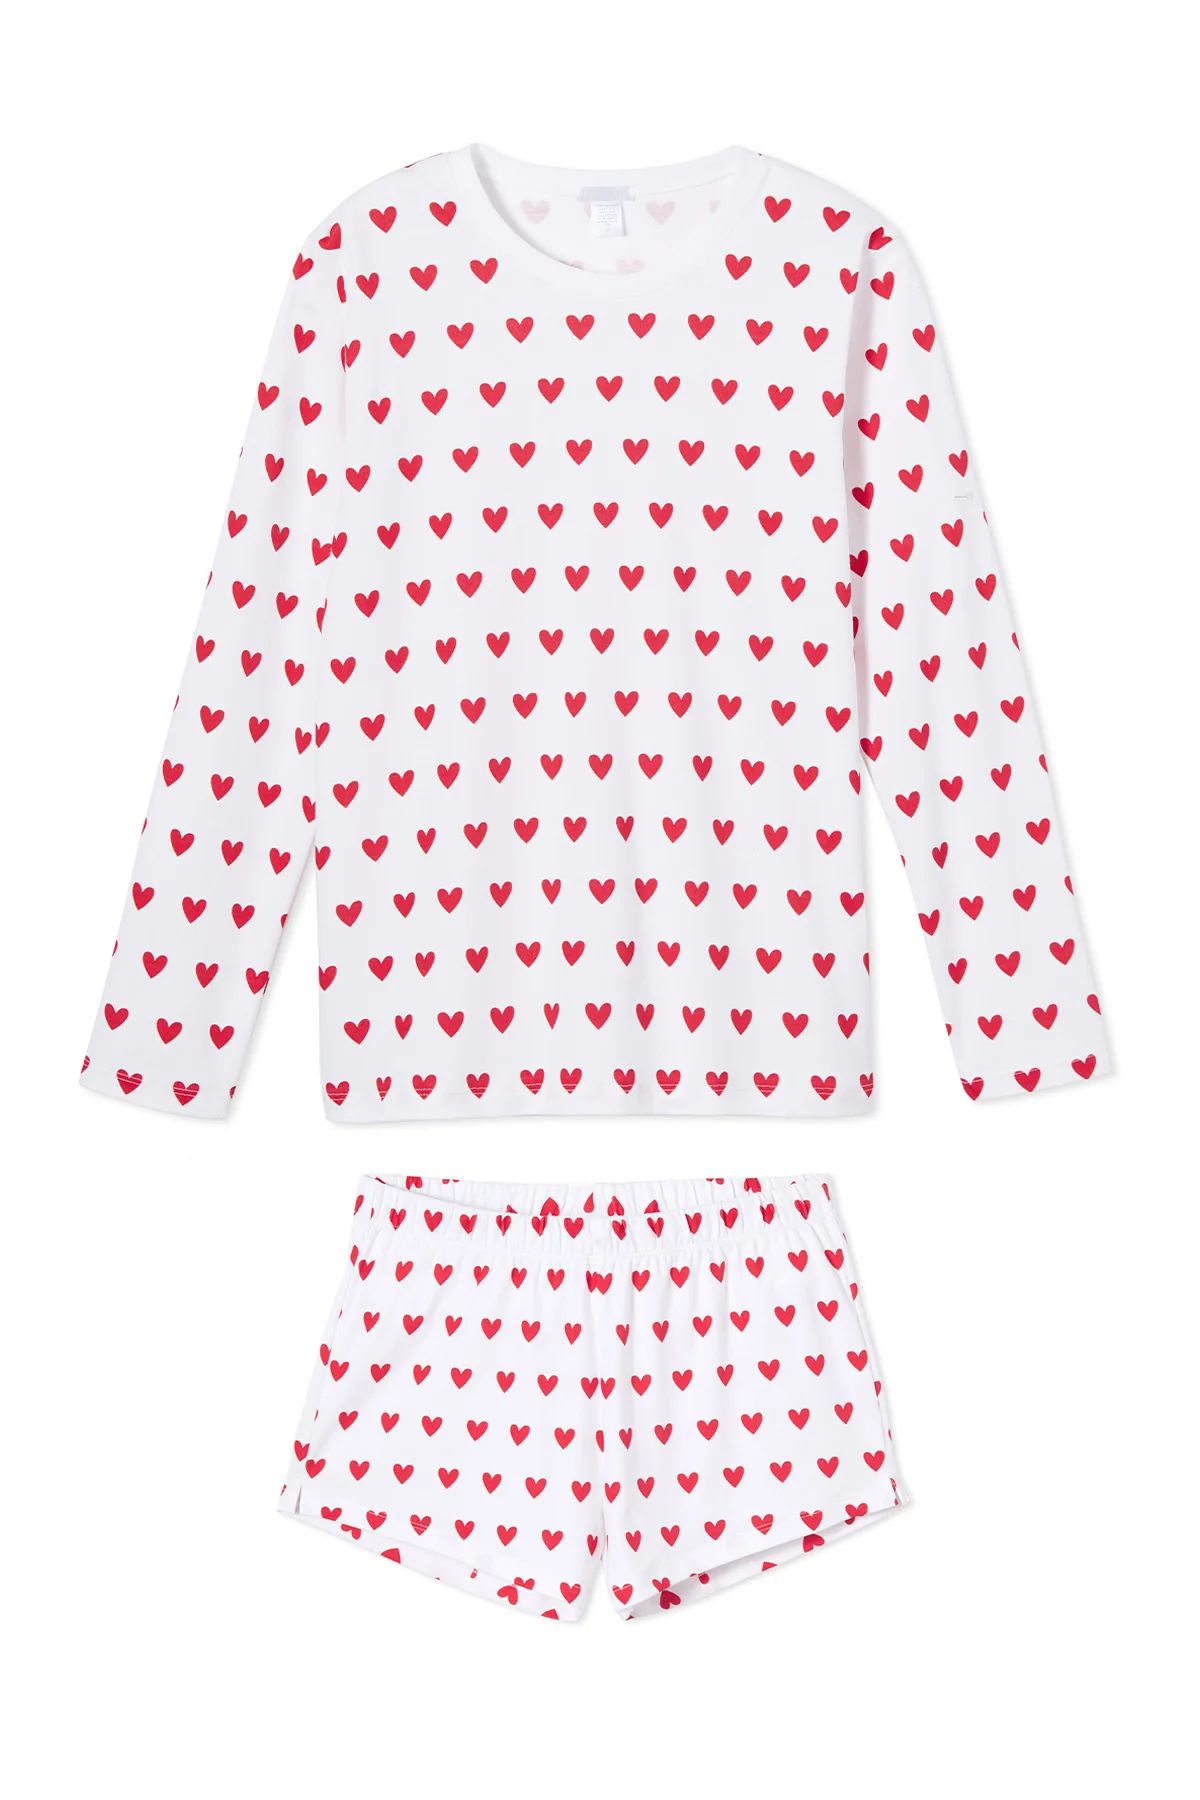 Pima Long-Short Weekend Set in Heart | LAKE Pajamas